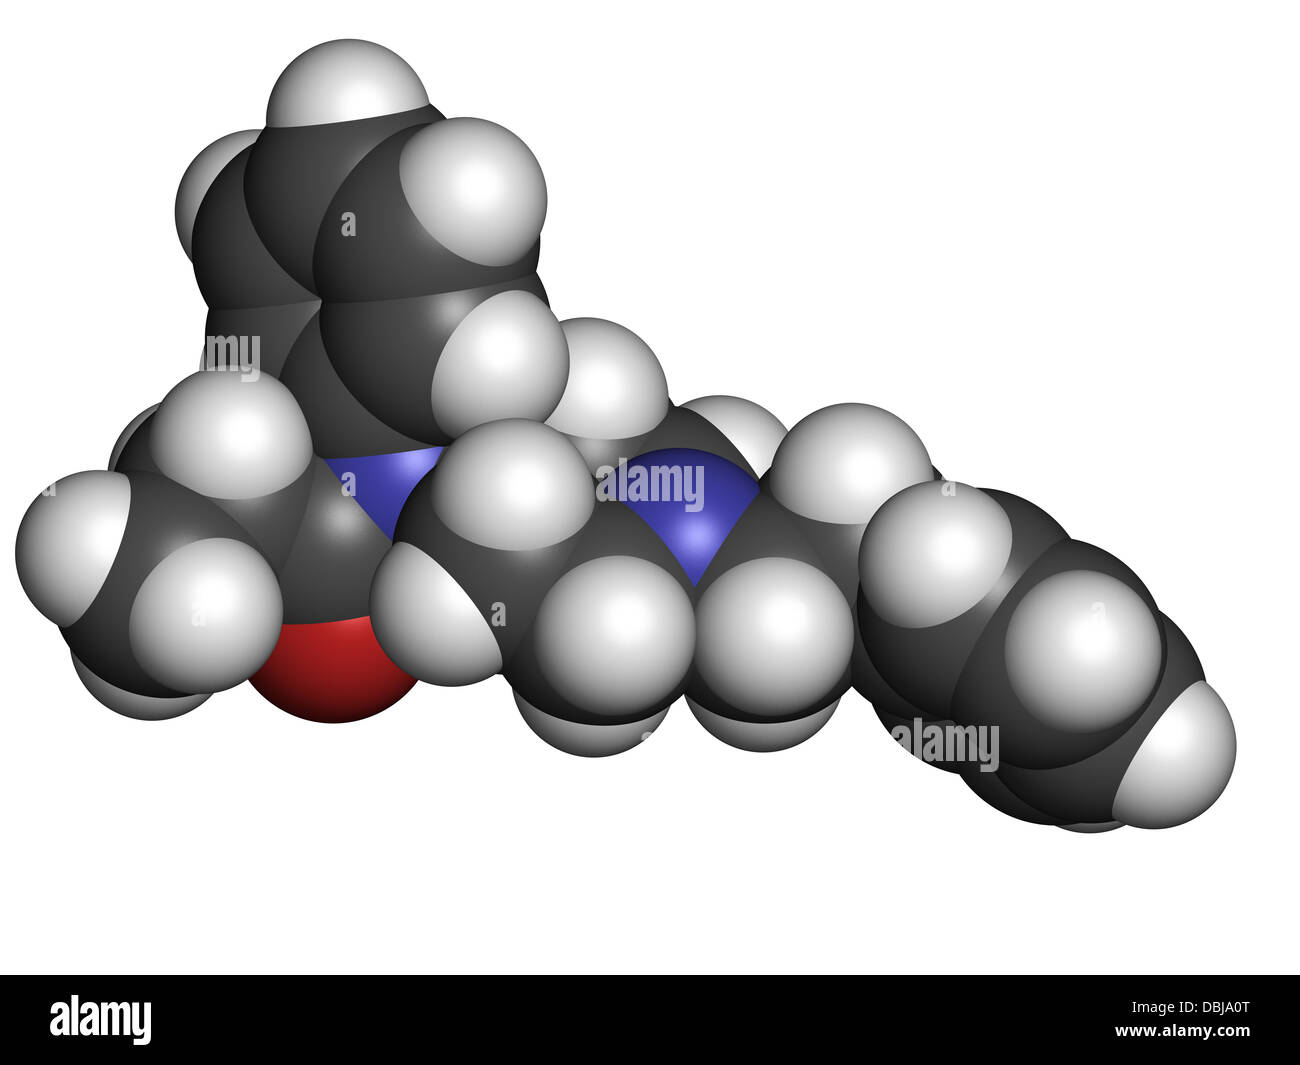 Fentanil (fentanyl) médicament analgésique opioïde, la structure chimique. Les atomes sont représentés comme des sphères avec codage couleur classiques Banque D'Images